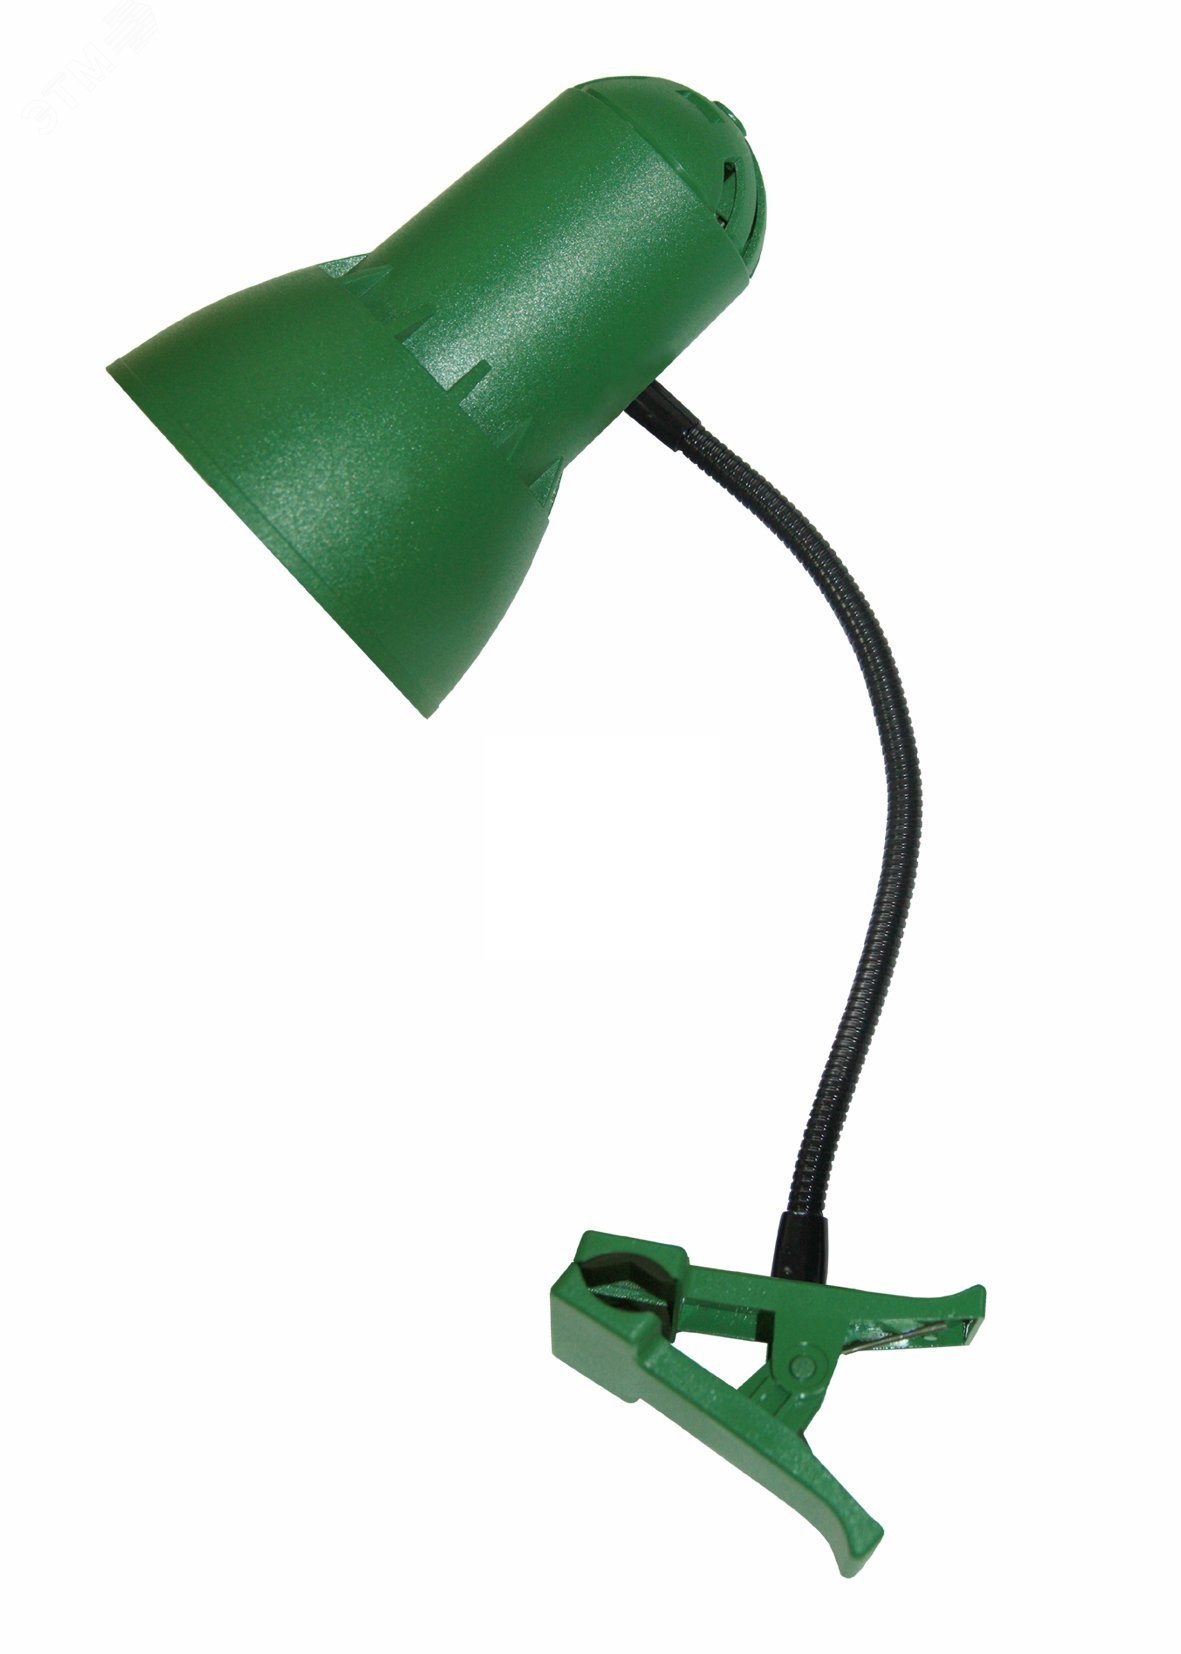 Cветильник Надежда ПШ 40 Вт Е27 б/л на прищепке   гибкая стойка зеленый  Трансвит - превью 2